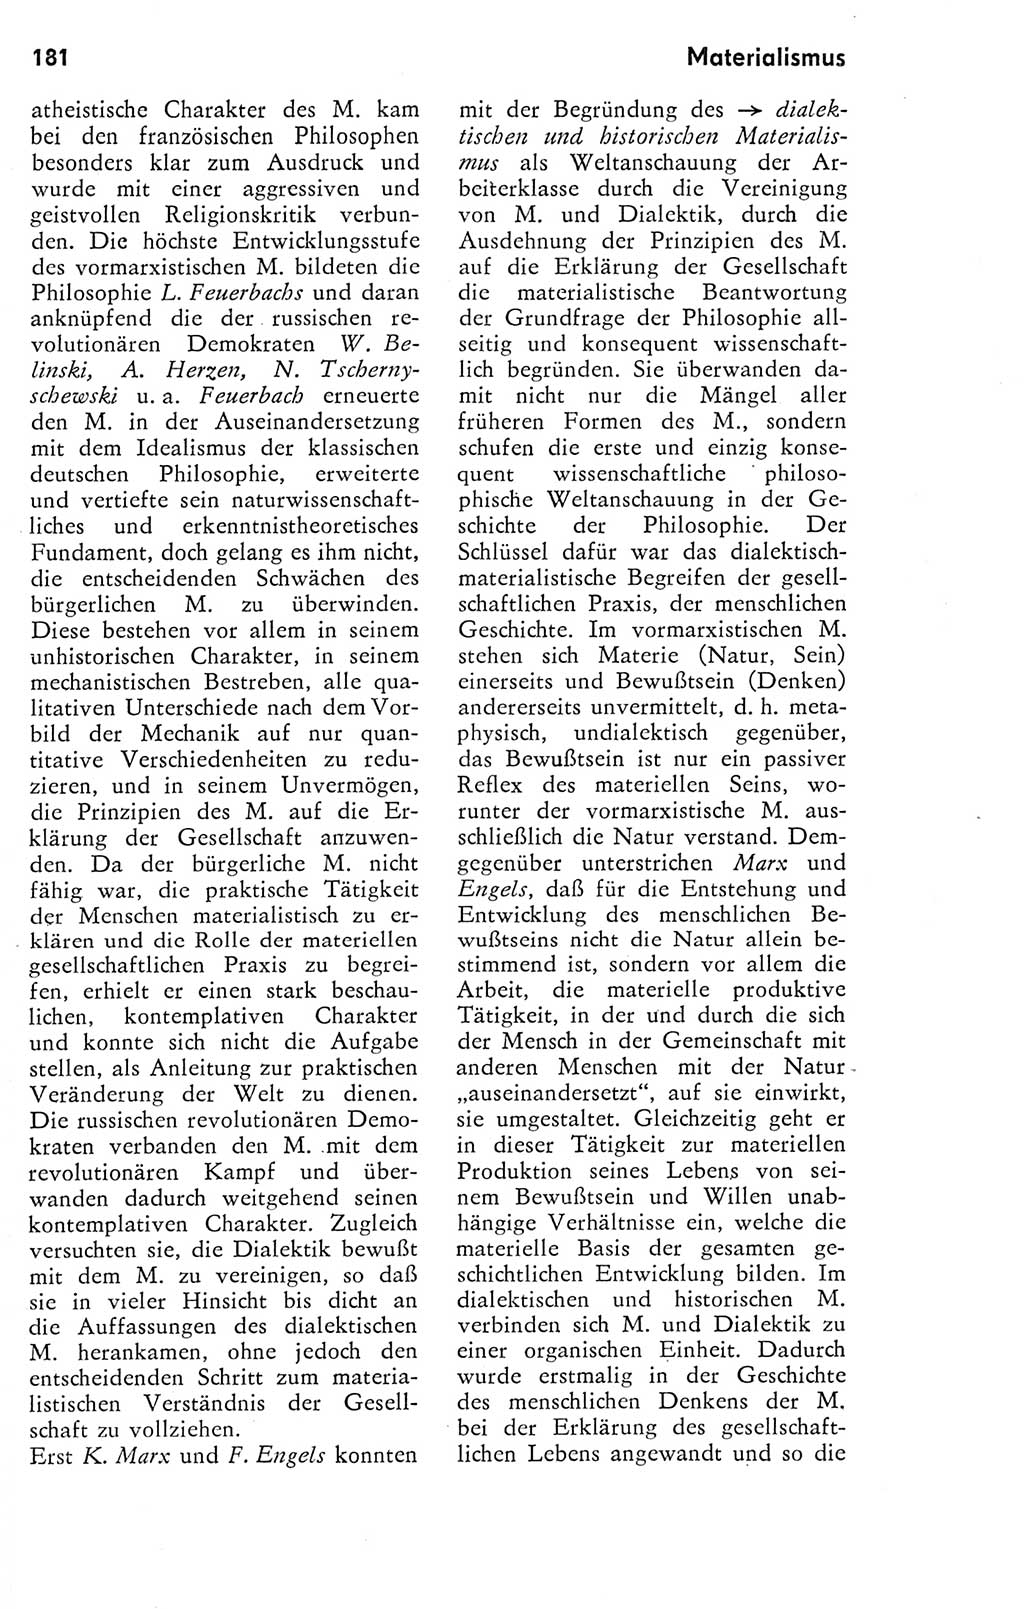 Kleines Wörterbuch der marxistisch-leninistischen Philosophie [Deutsche Demokratische Republik (DDR)] 1974, Seite 182 (Kl. Wb. ML Phil. DDR 1974, S. 182)